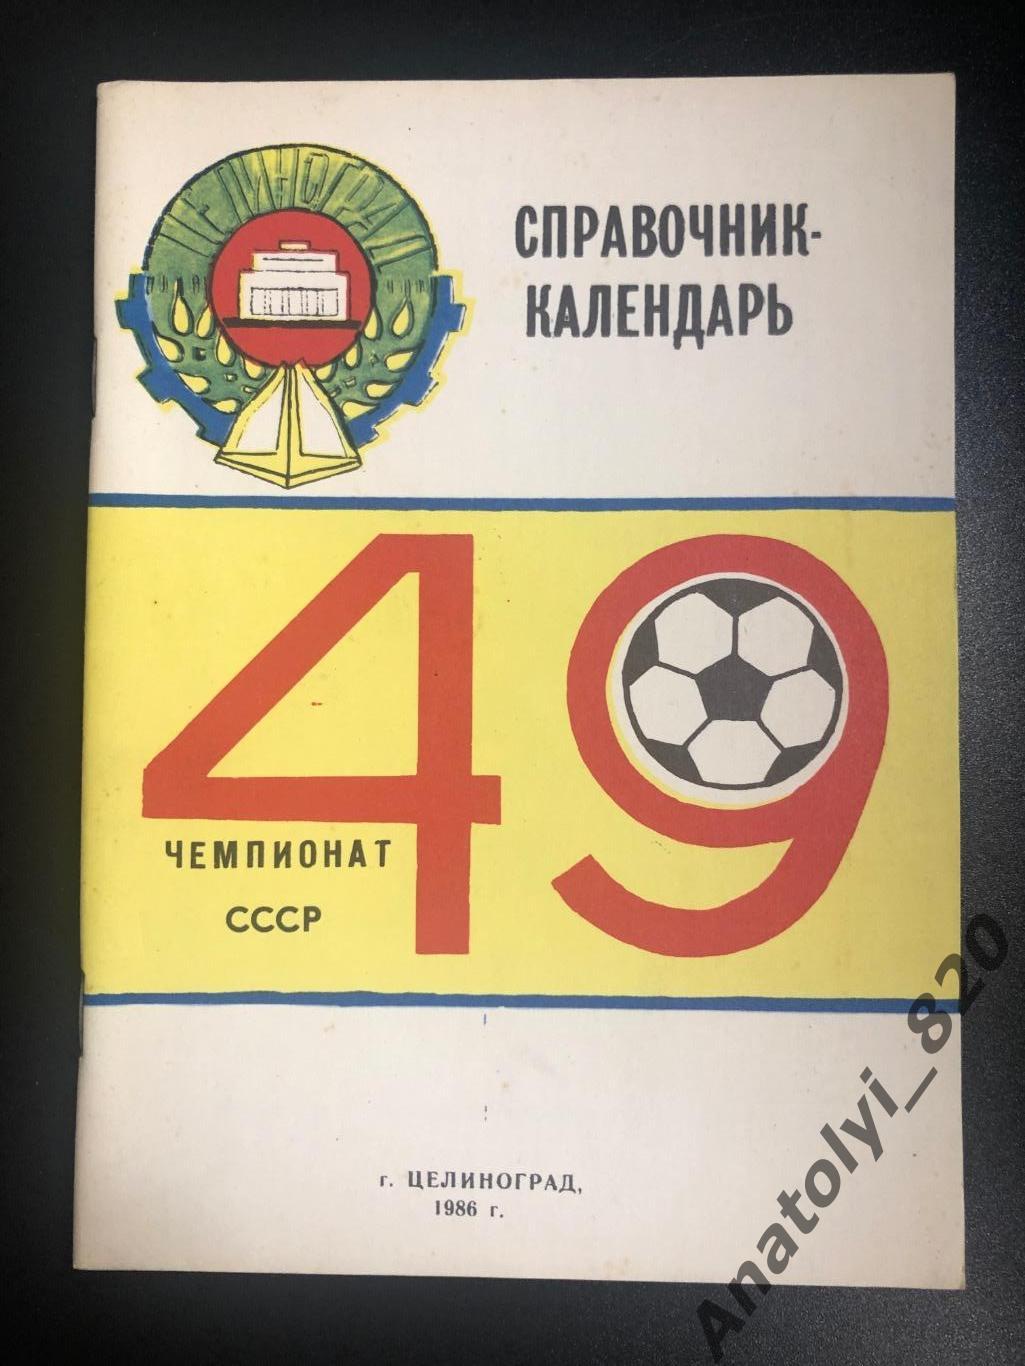 Целиноград 1986 год справочник - календарь